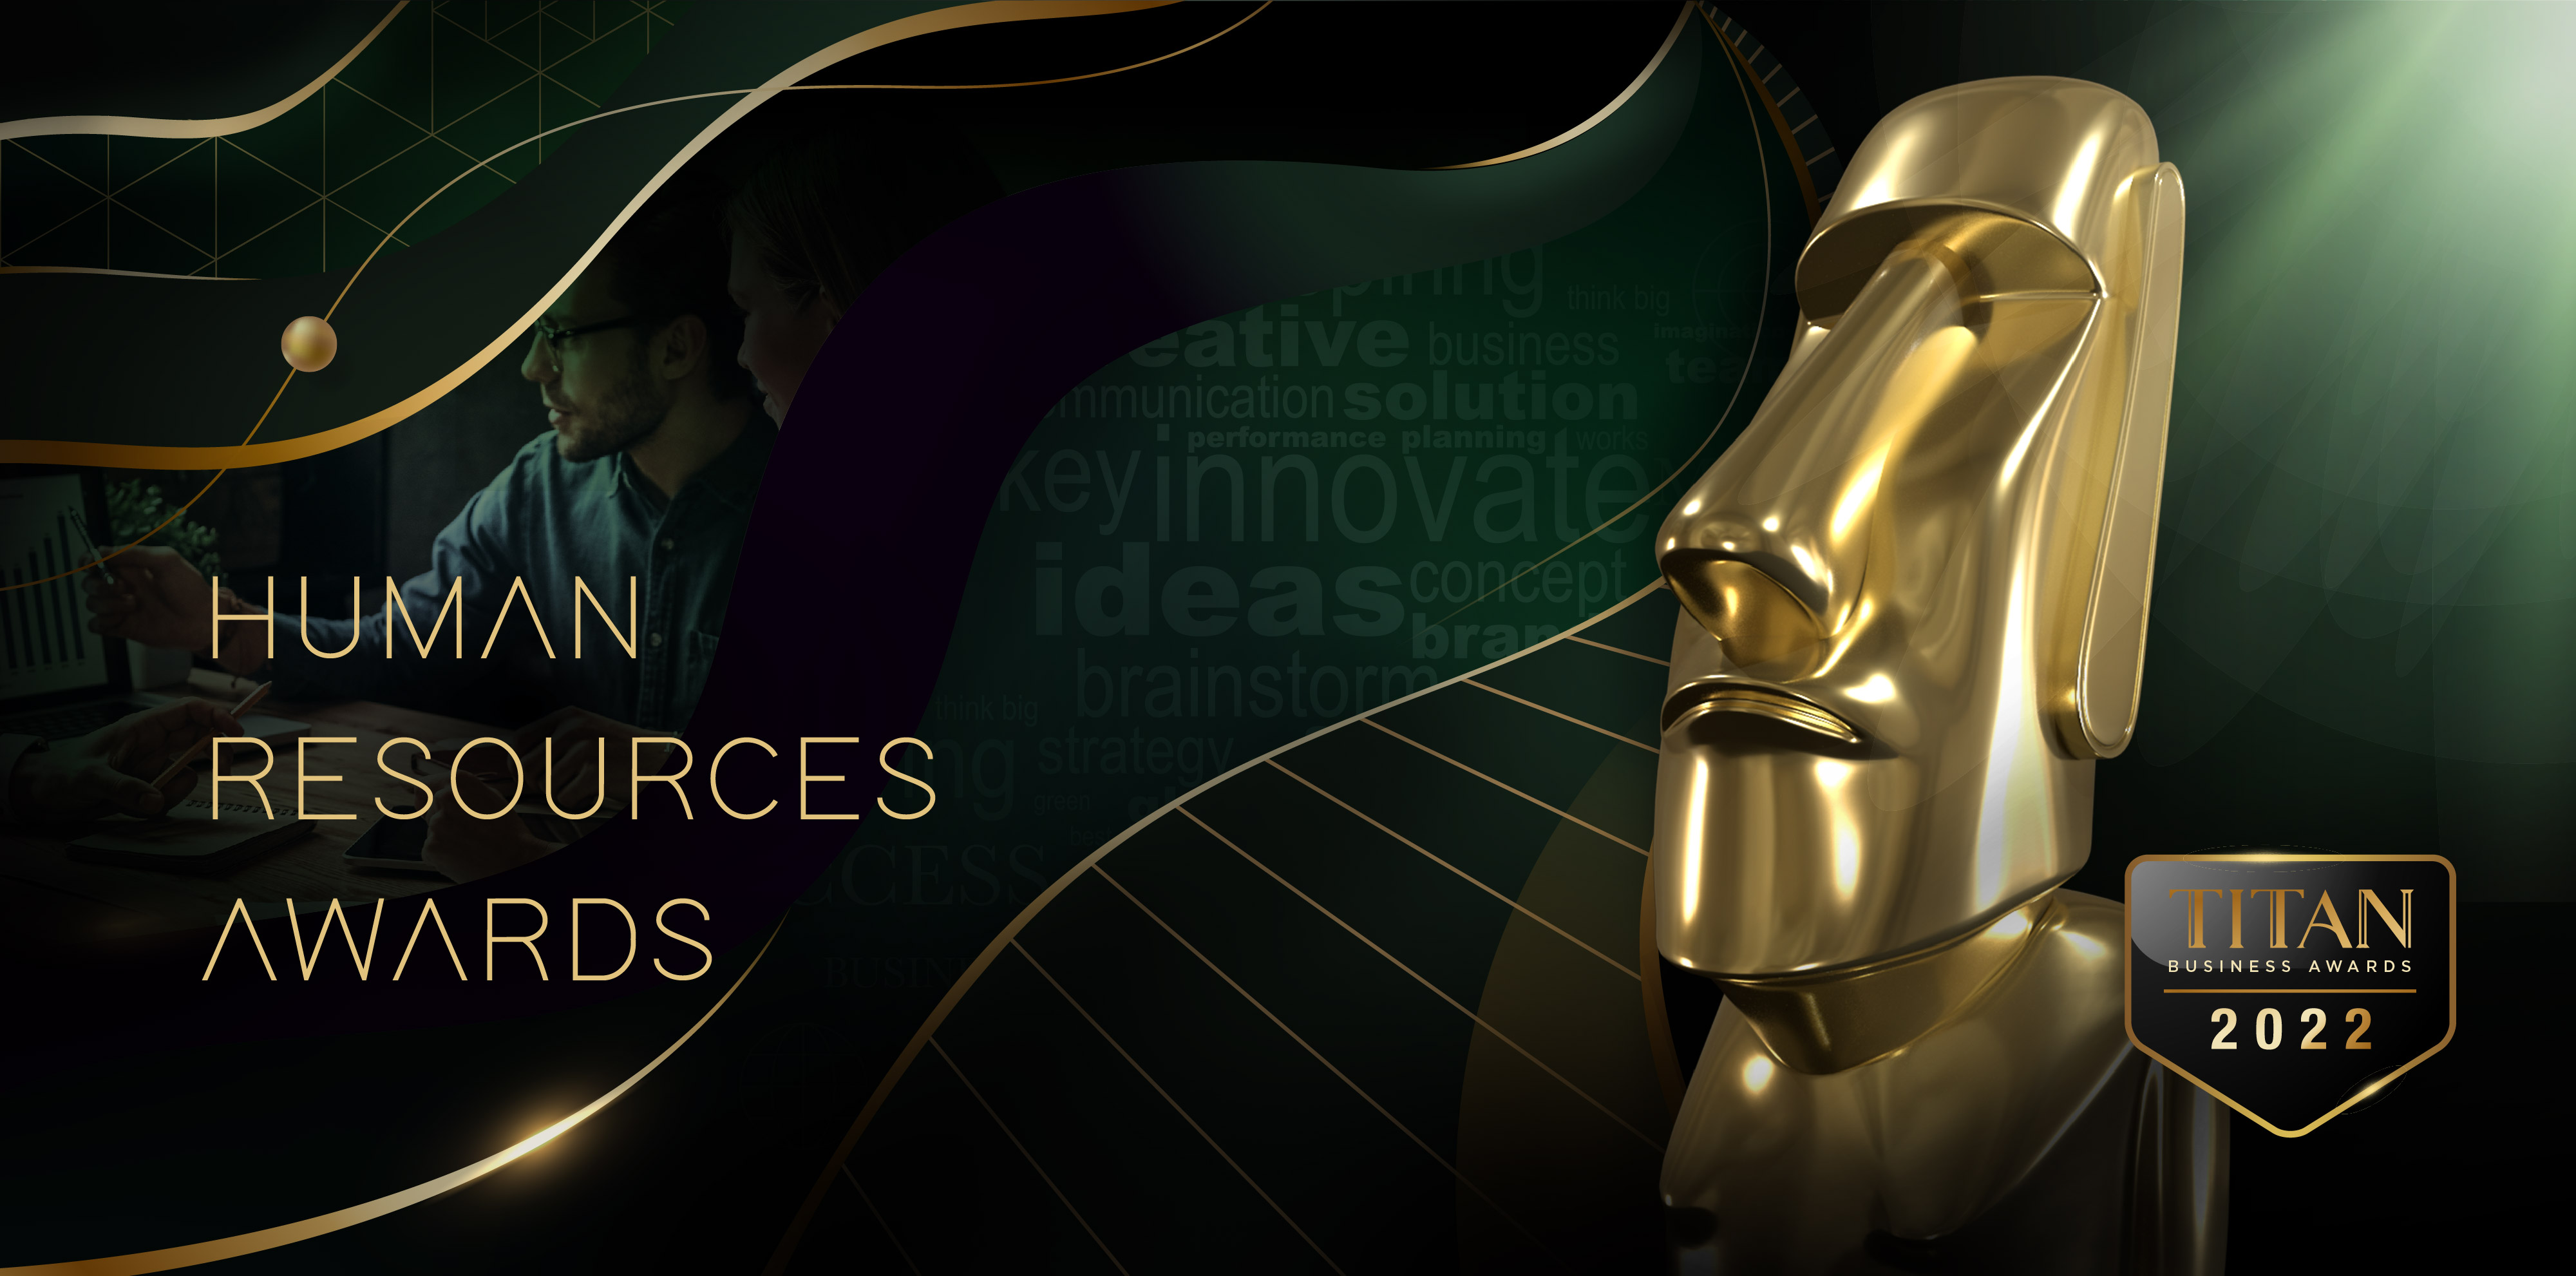 TITAN Human Resources Awards | International Business Awards | HR Awards